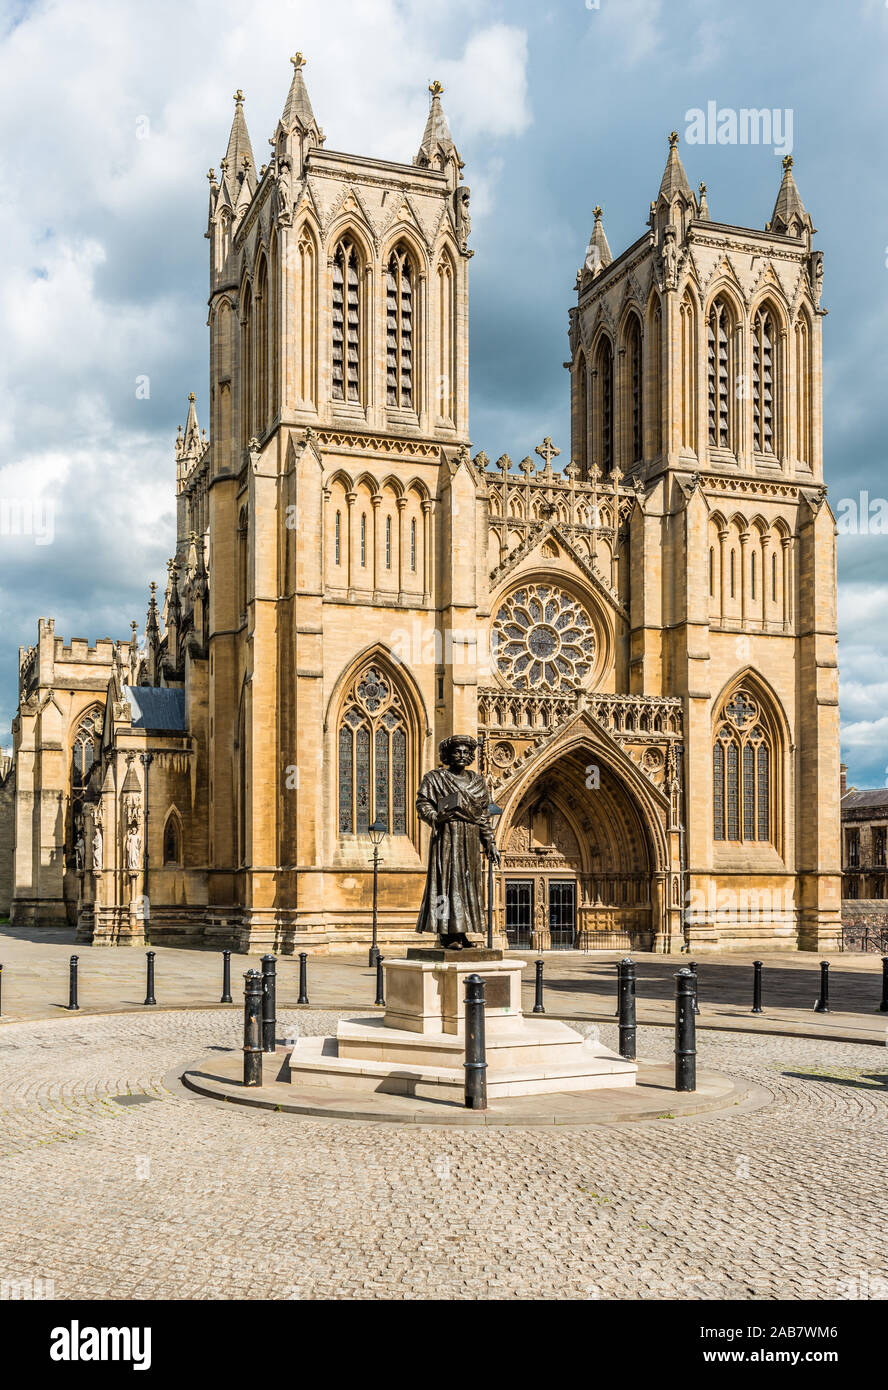 Mohun Ram Rajah Roy statue ci-dessous la cathédrale de Bristol (église cathédrale de la Sainte et indivisible Trinité), Bristol, Angleterre, Royaume-Uni, Europe Banque D'Images